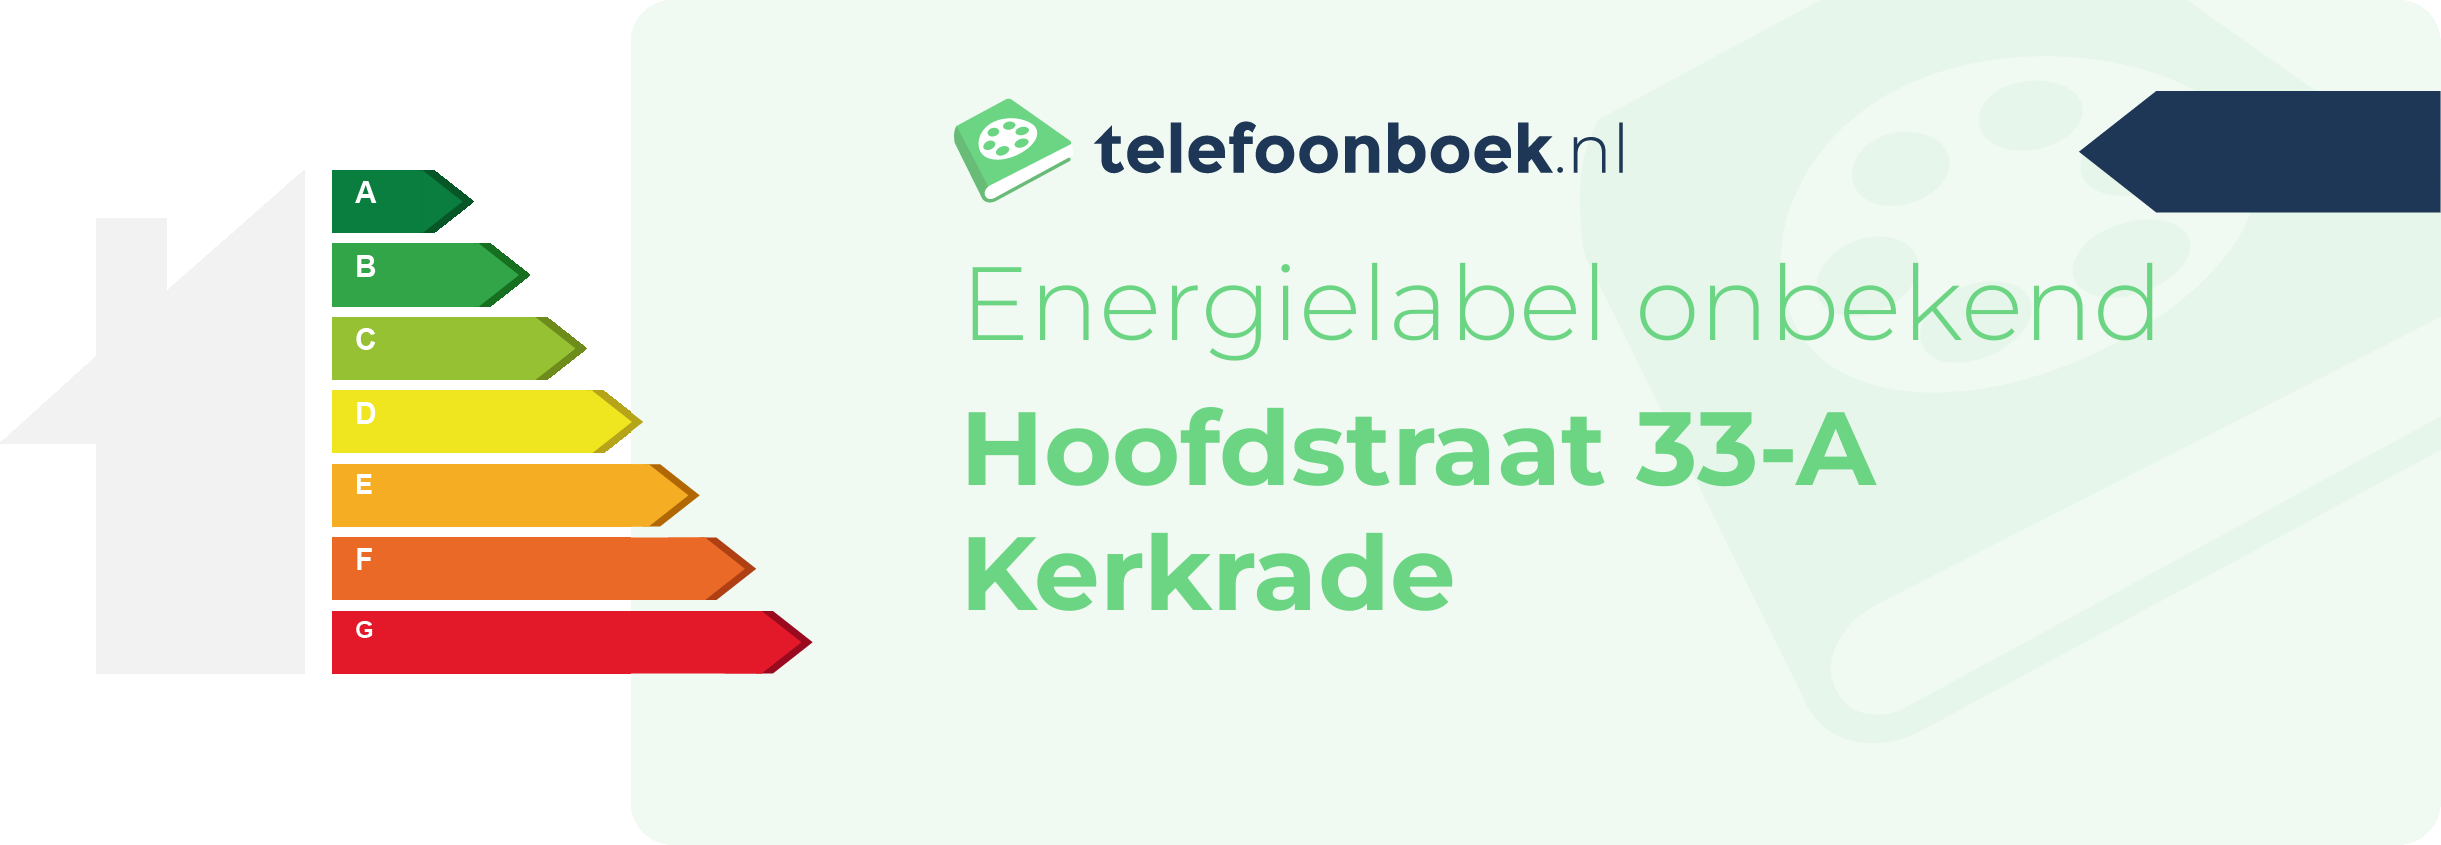 Energielabel Hoofdstraat 33-A Kerkrade